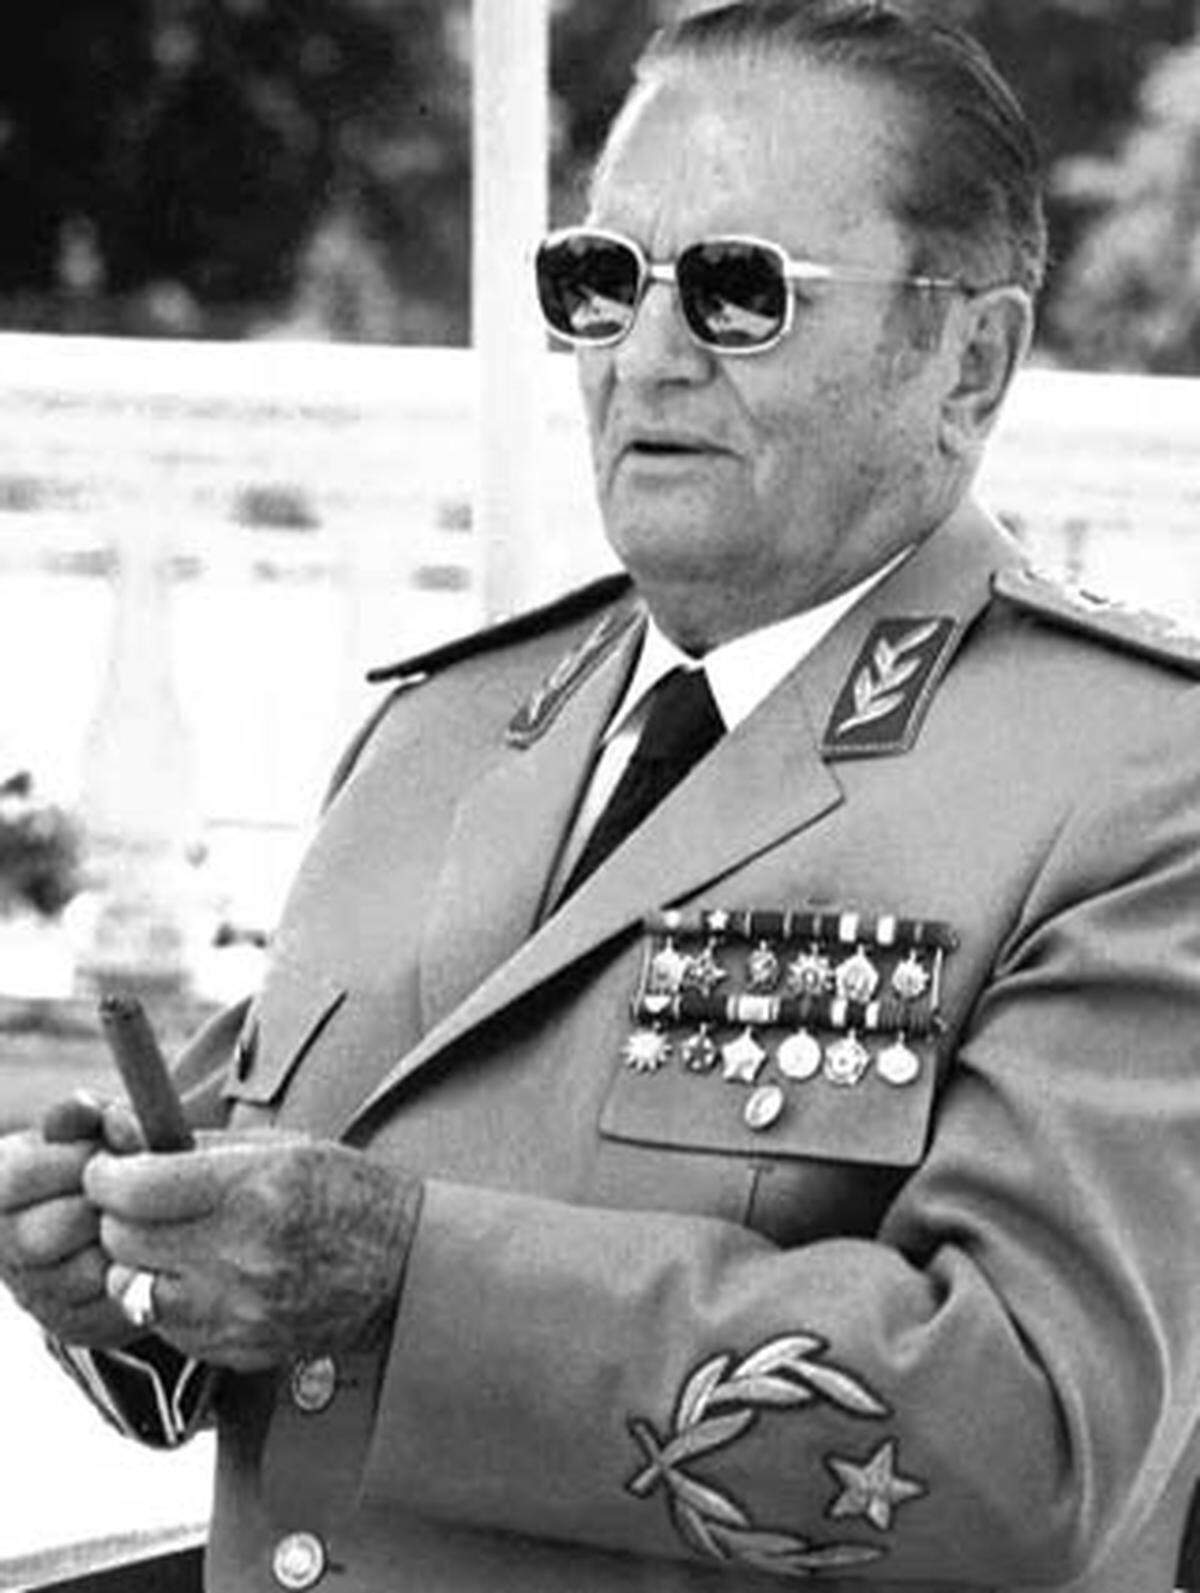 Vor 30 Jahren, am 4. Mai 1980, starb der langjährige jugoslawische Kommunisten- und Staatschef Josip Broz Tito. Zu Lebzeiten wurde er von seinen Landsleuten bewundert und geachtet, nach seinem Tod jahrelang ebenso stark verachtet. Heute wird seine Zeit von ehemaligen Landsleuten in einem objektiveren Licht bewertet.